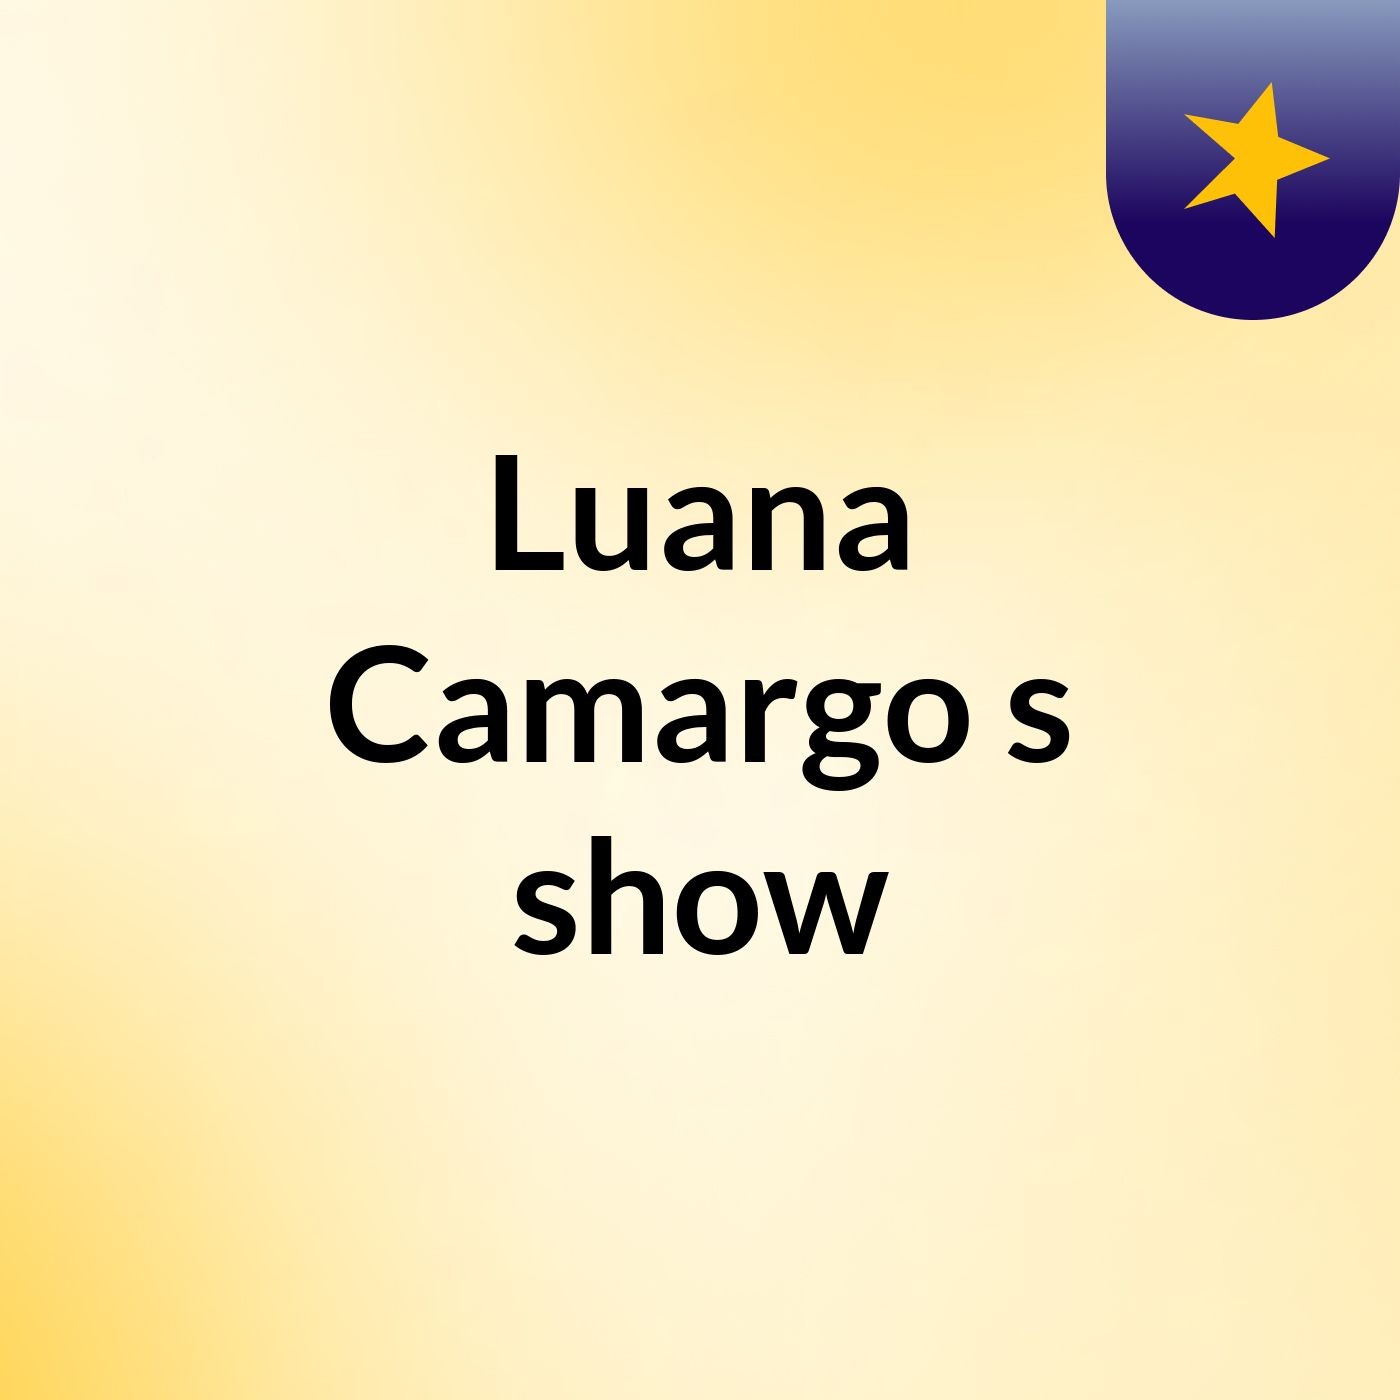 Luana Camargo's show